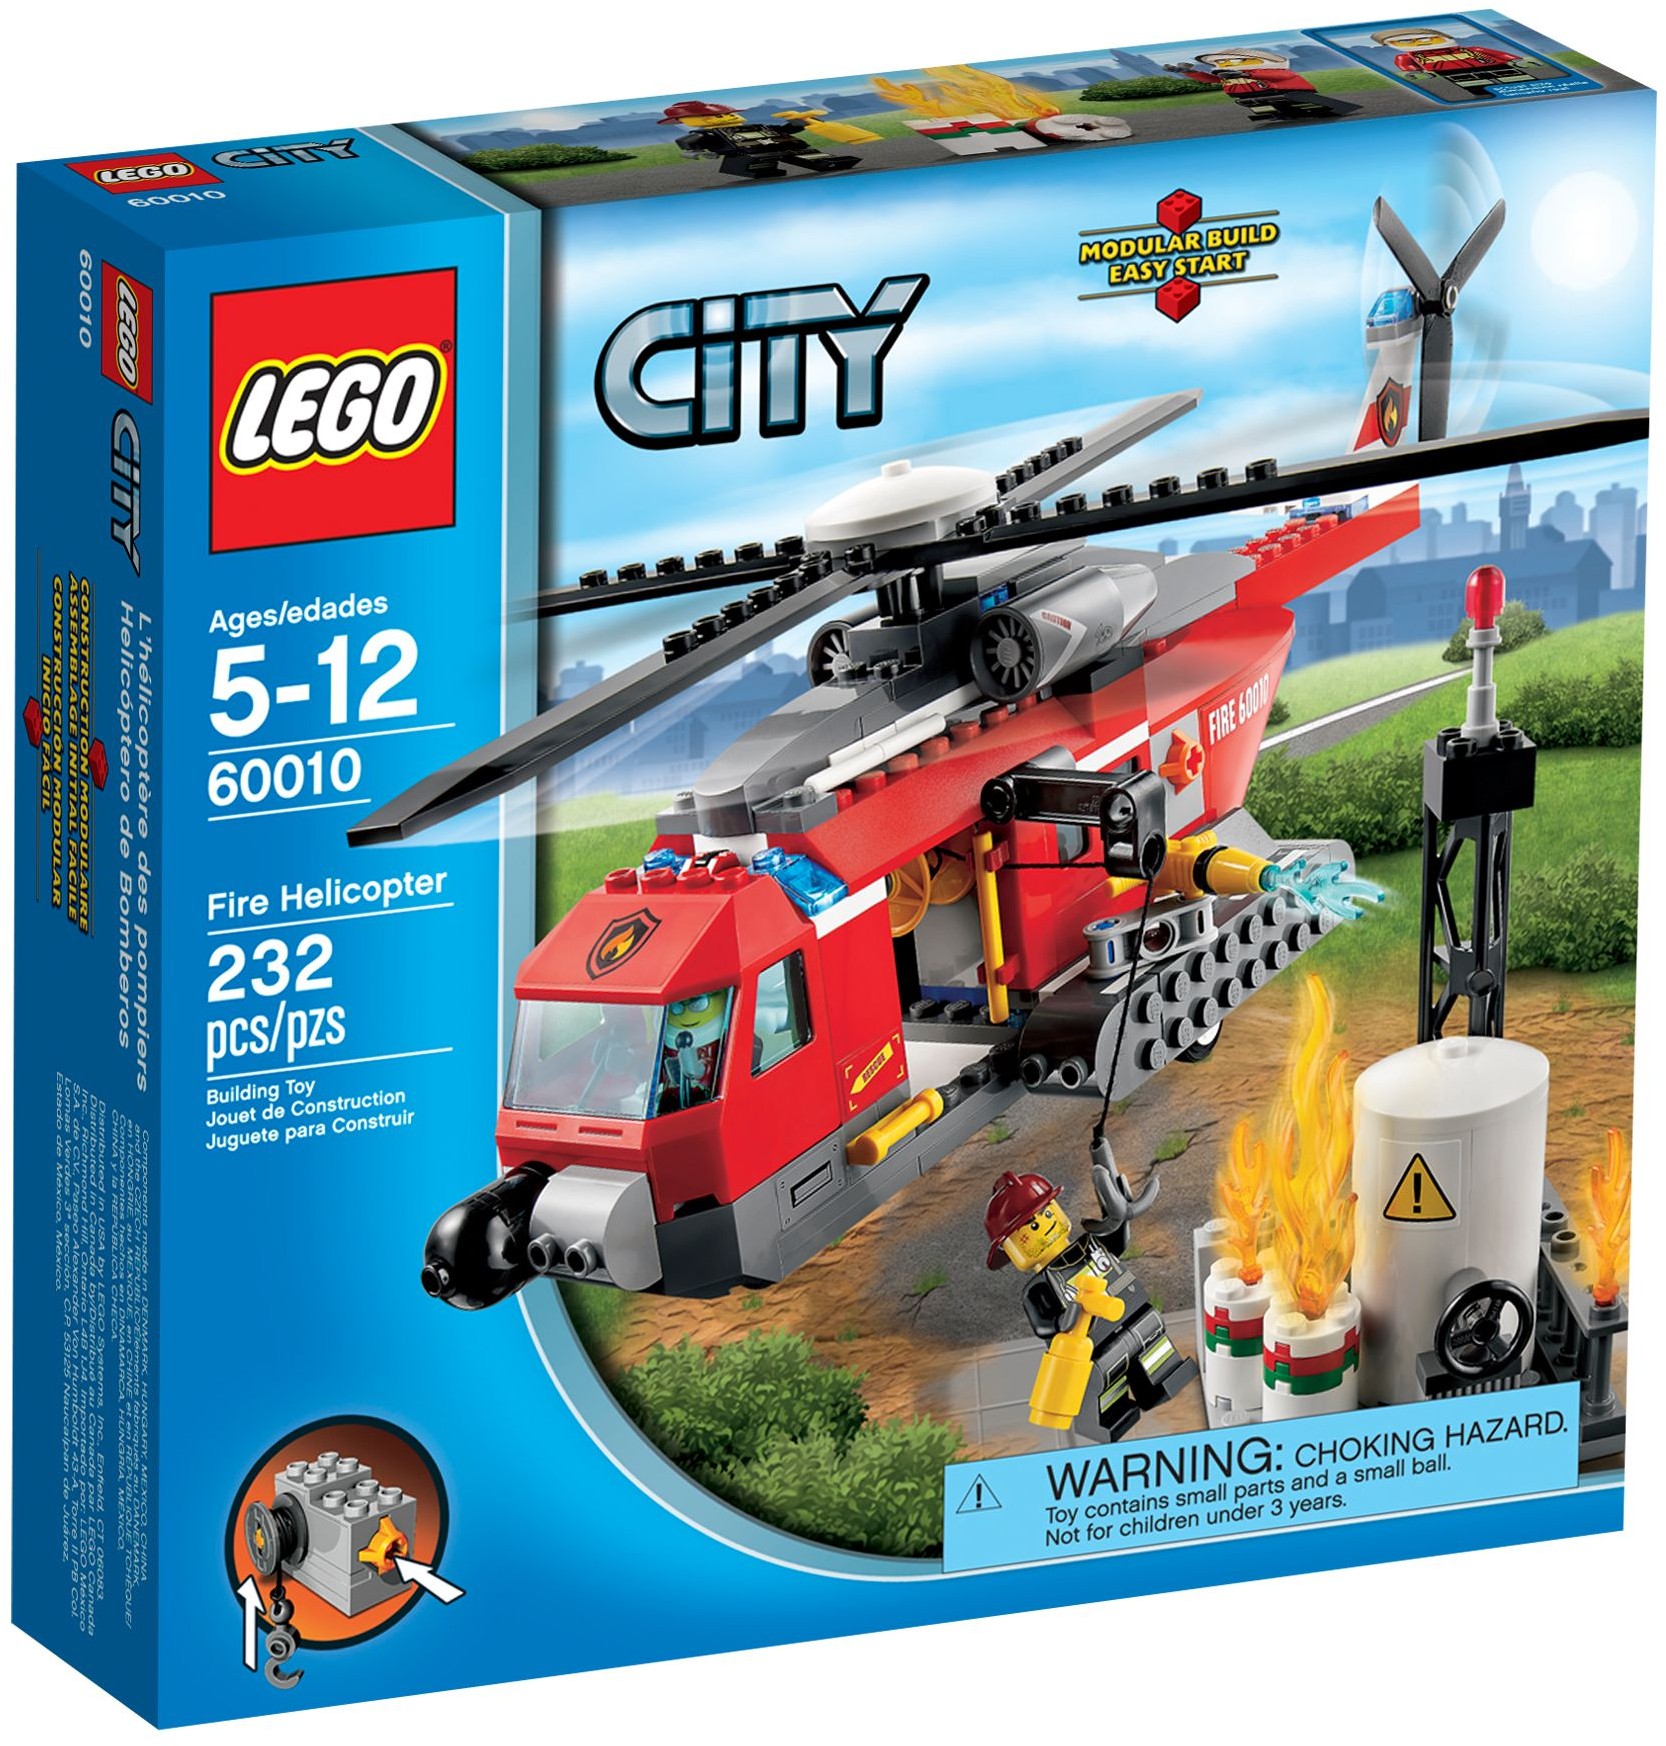 LEGO City 60010 pas cher, L'hélicoptère des pompiers